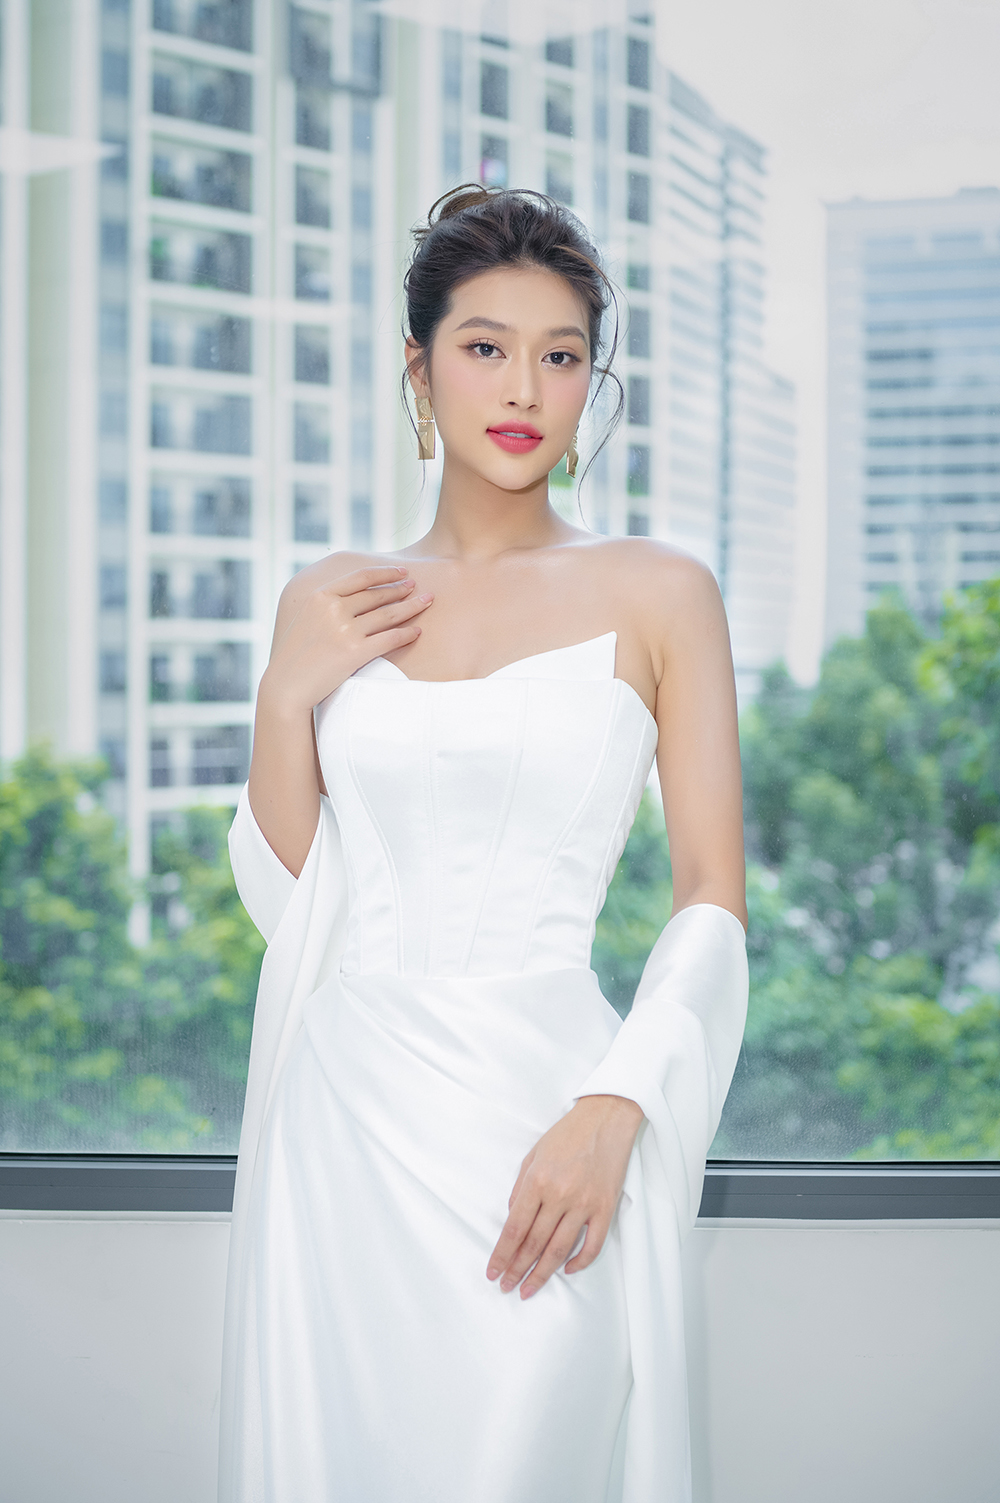 Hoa hậu Mai Phương đắt show làm MC trước thềm Miss World 2023 - Ảnh 3.